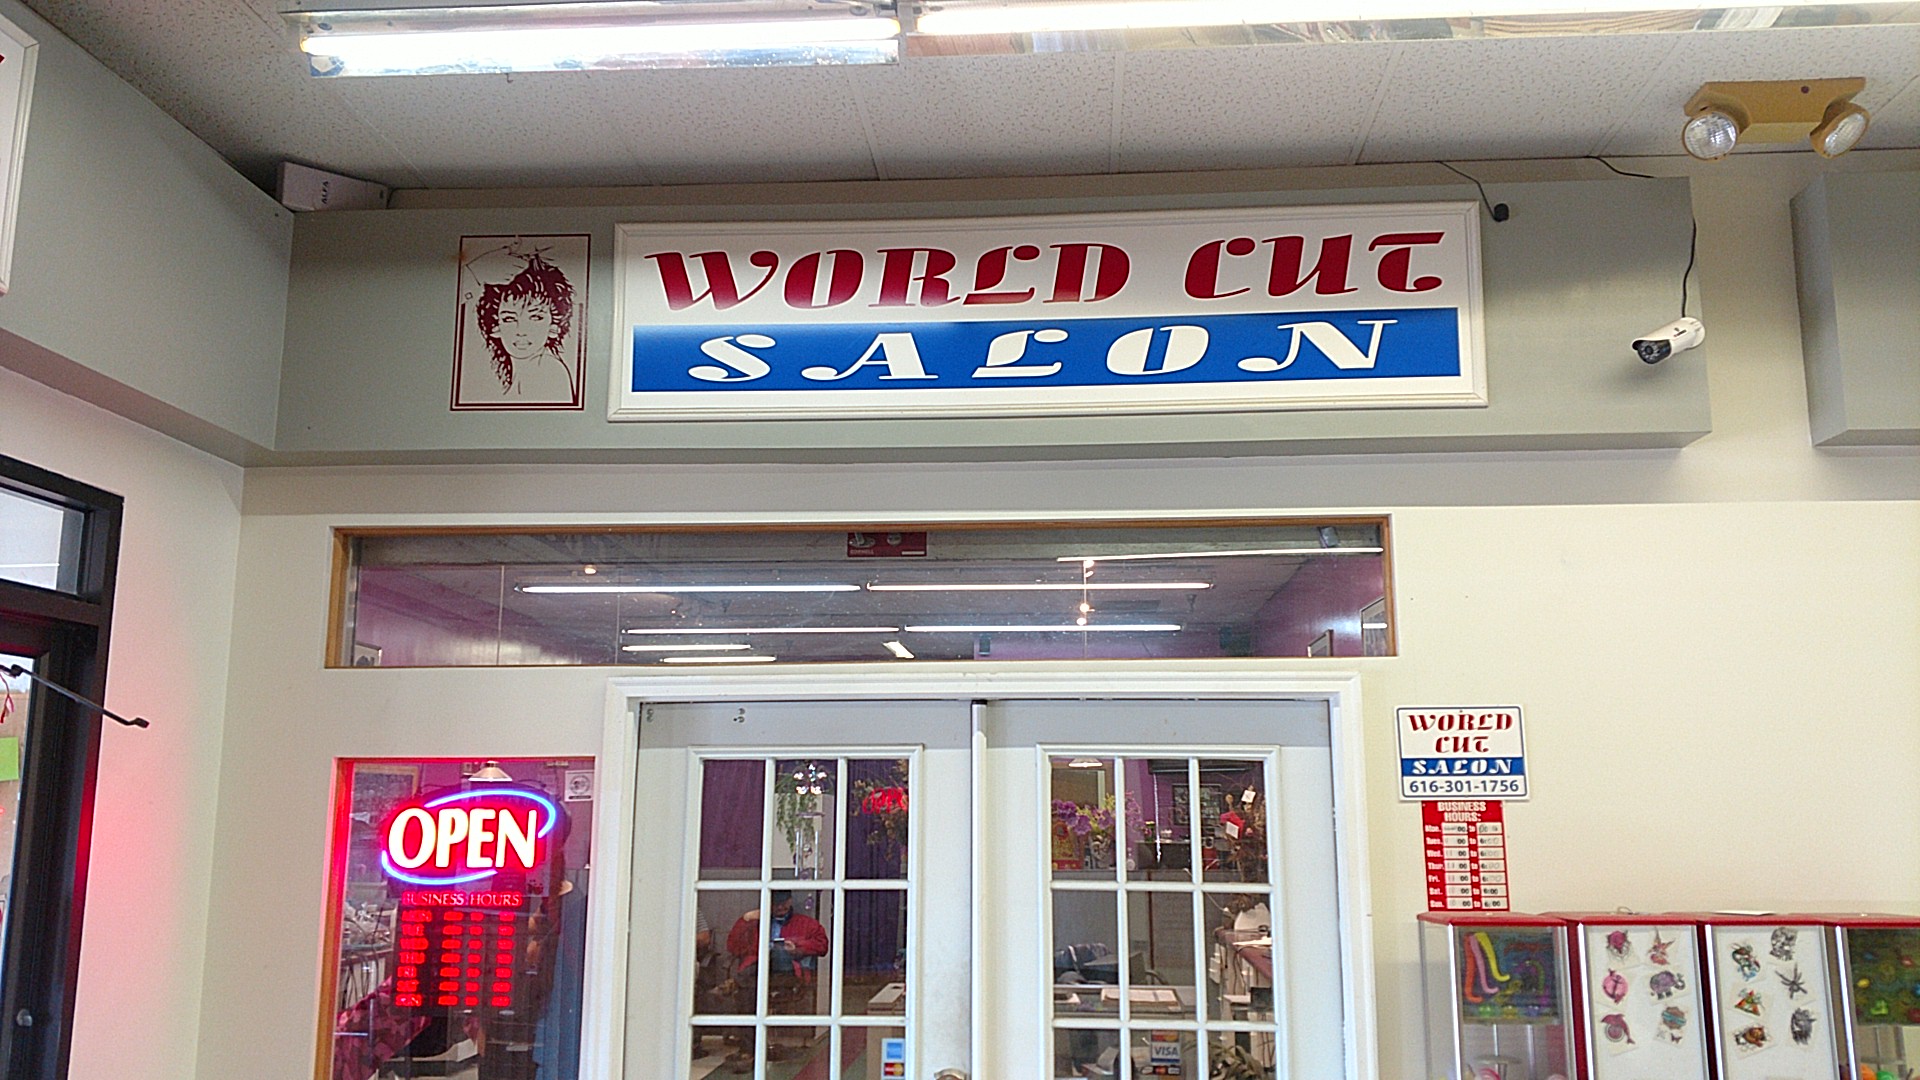 World Cut Salon